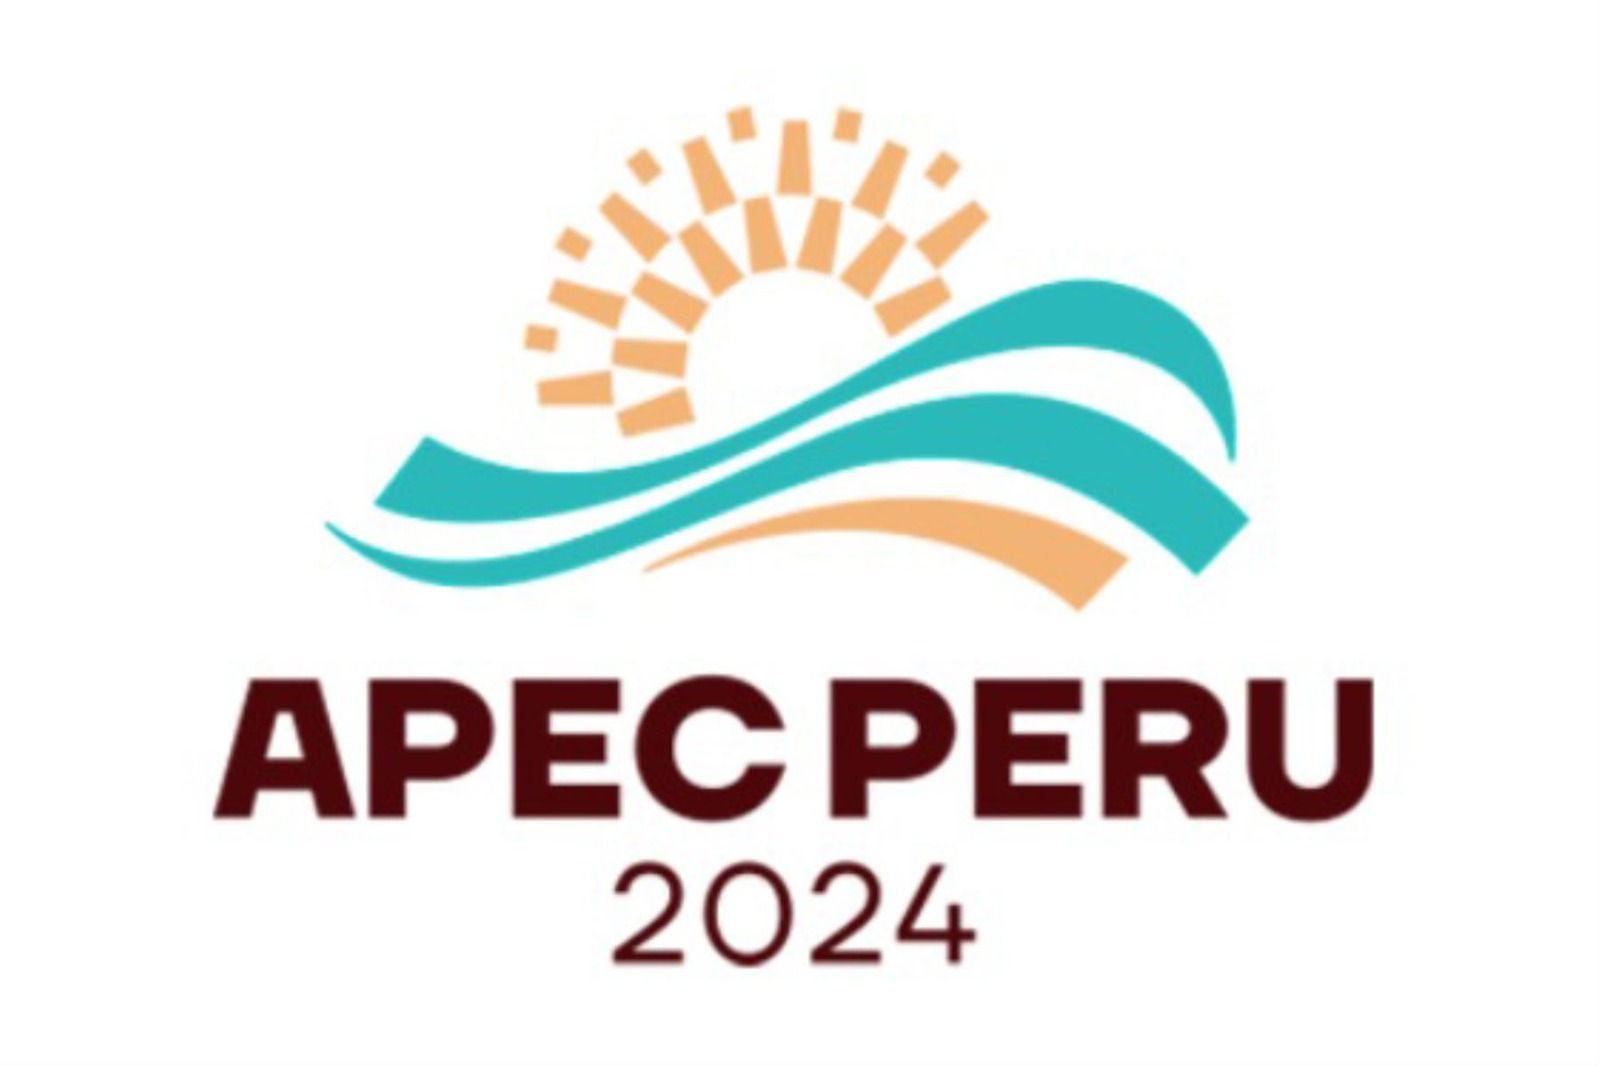 APEC 2024 in Peru